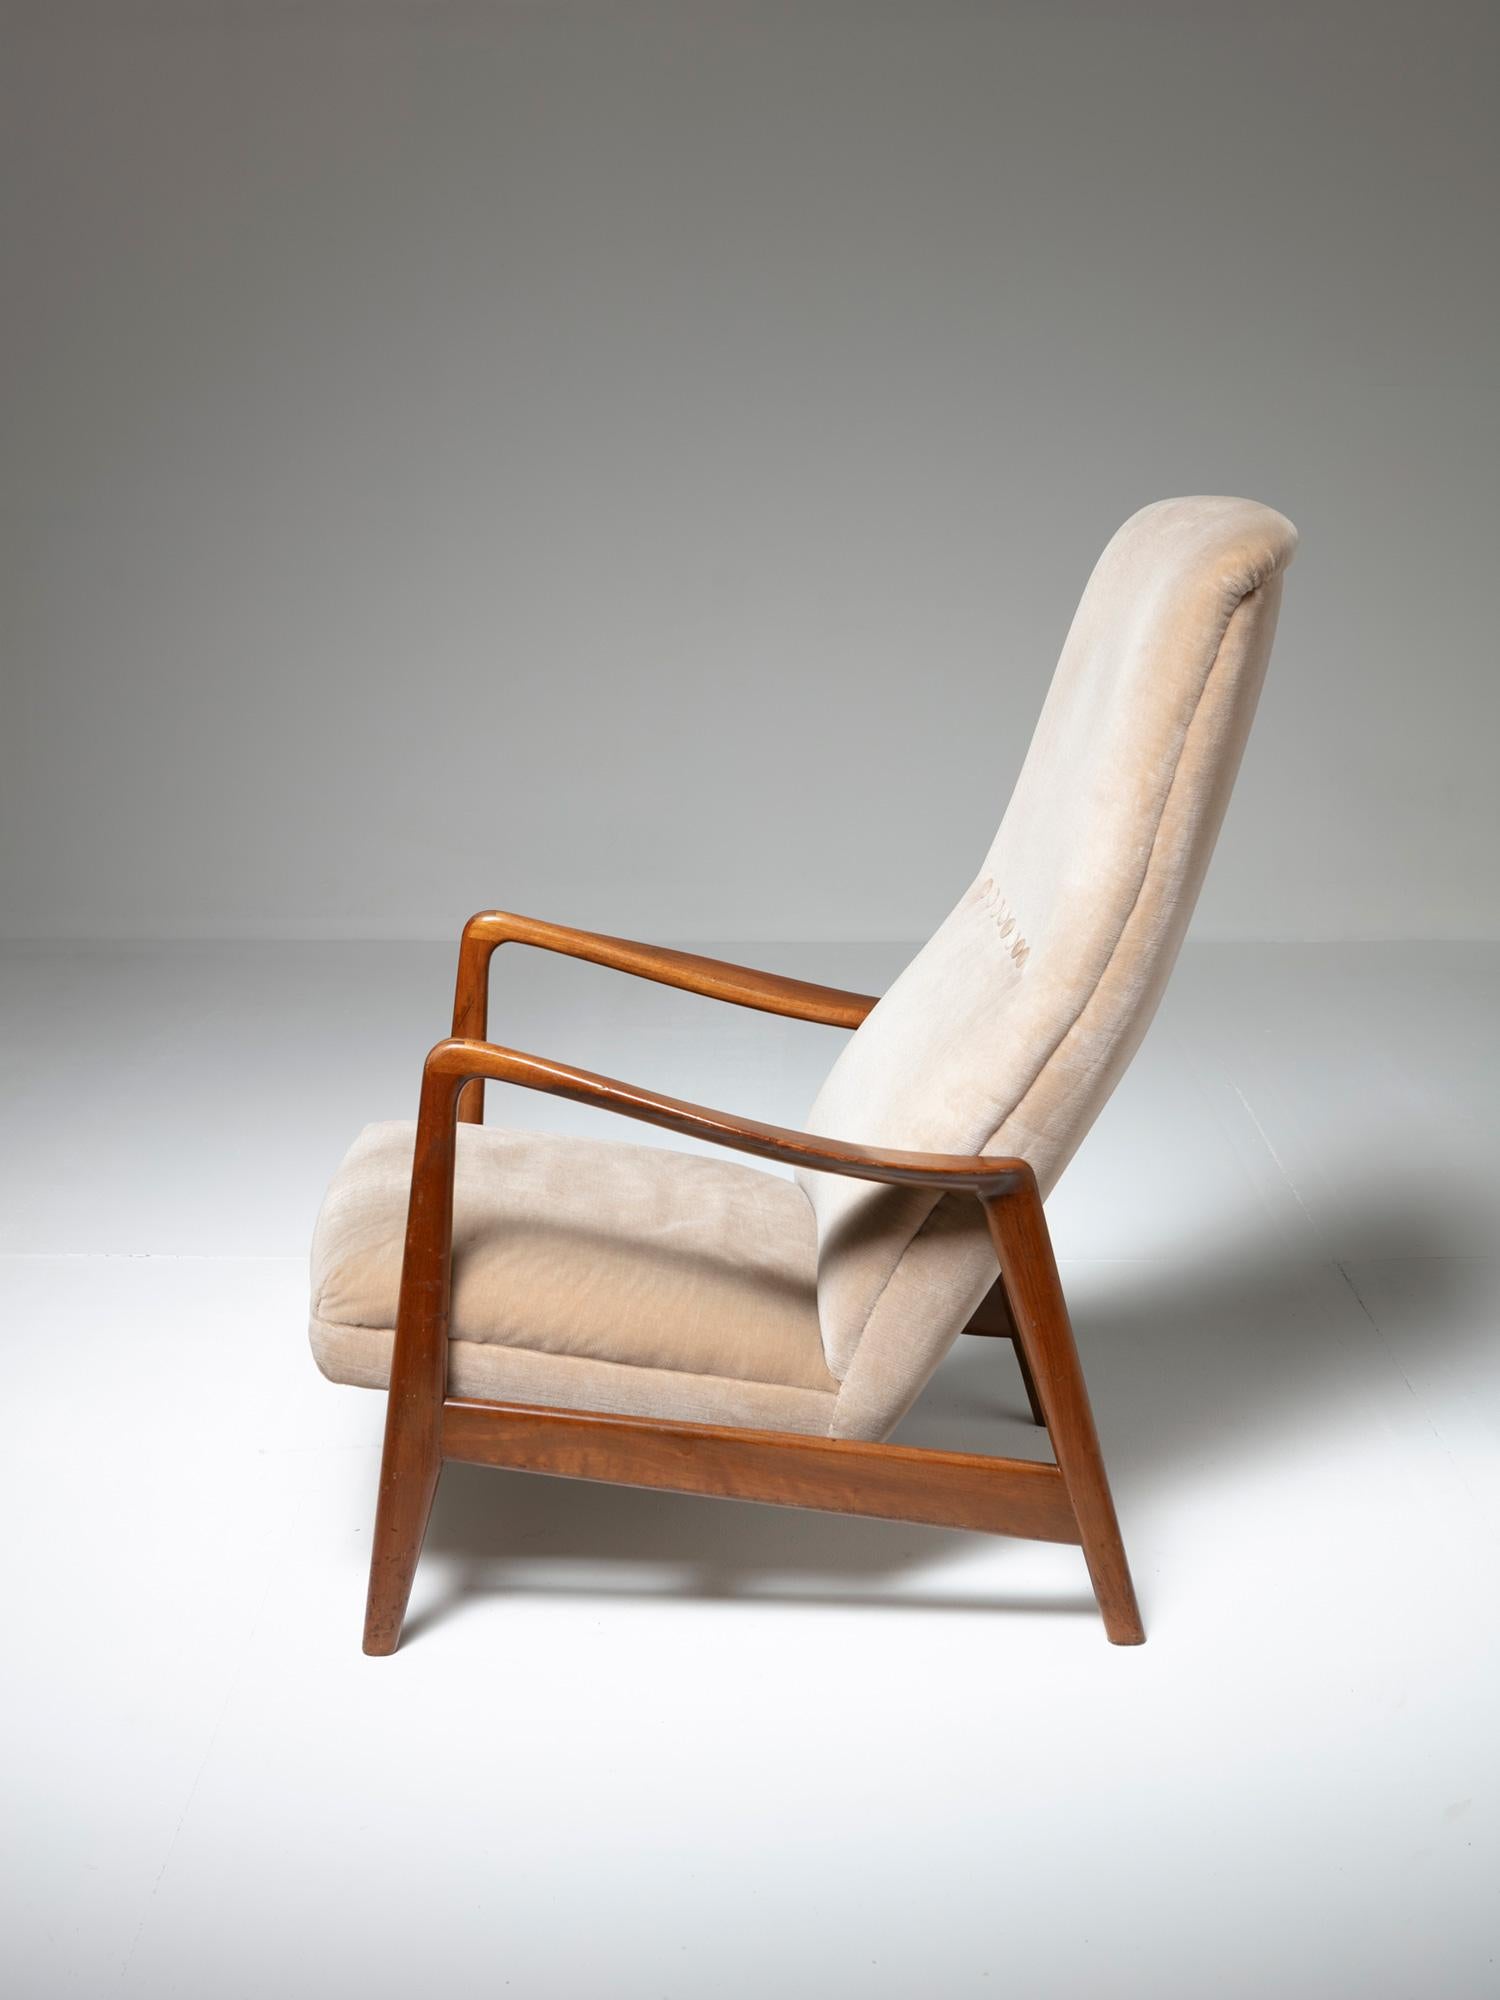 Italian Lounge Chair by Arnestad Bruk for Cassina